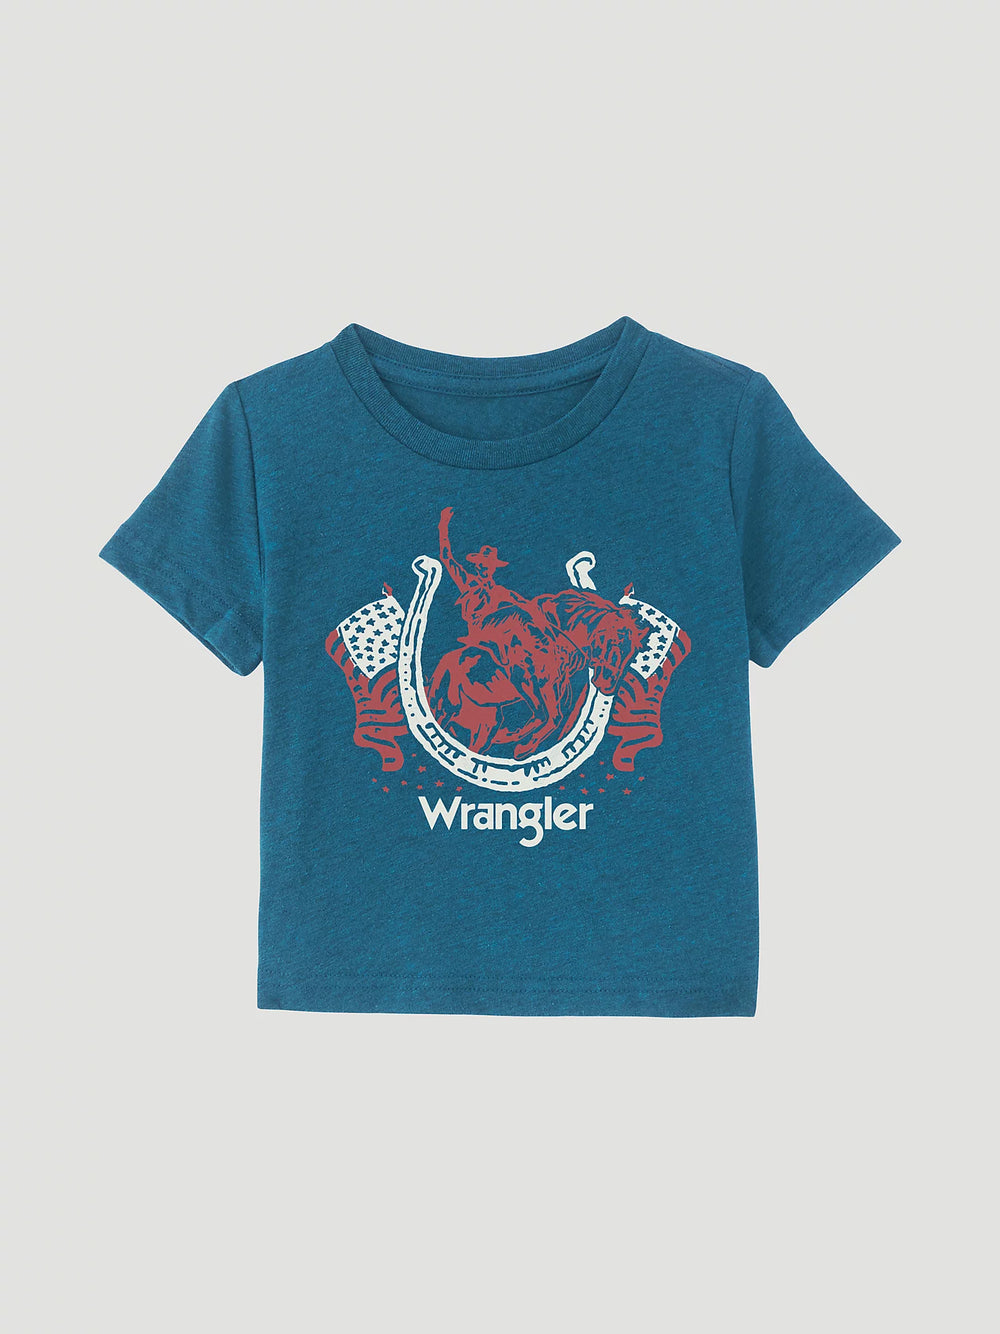 Wrangler - Unisex Infant Toddler Graphic Tee